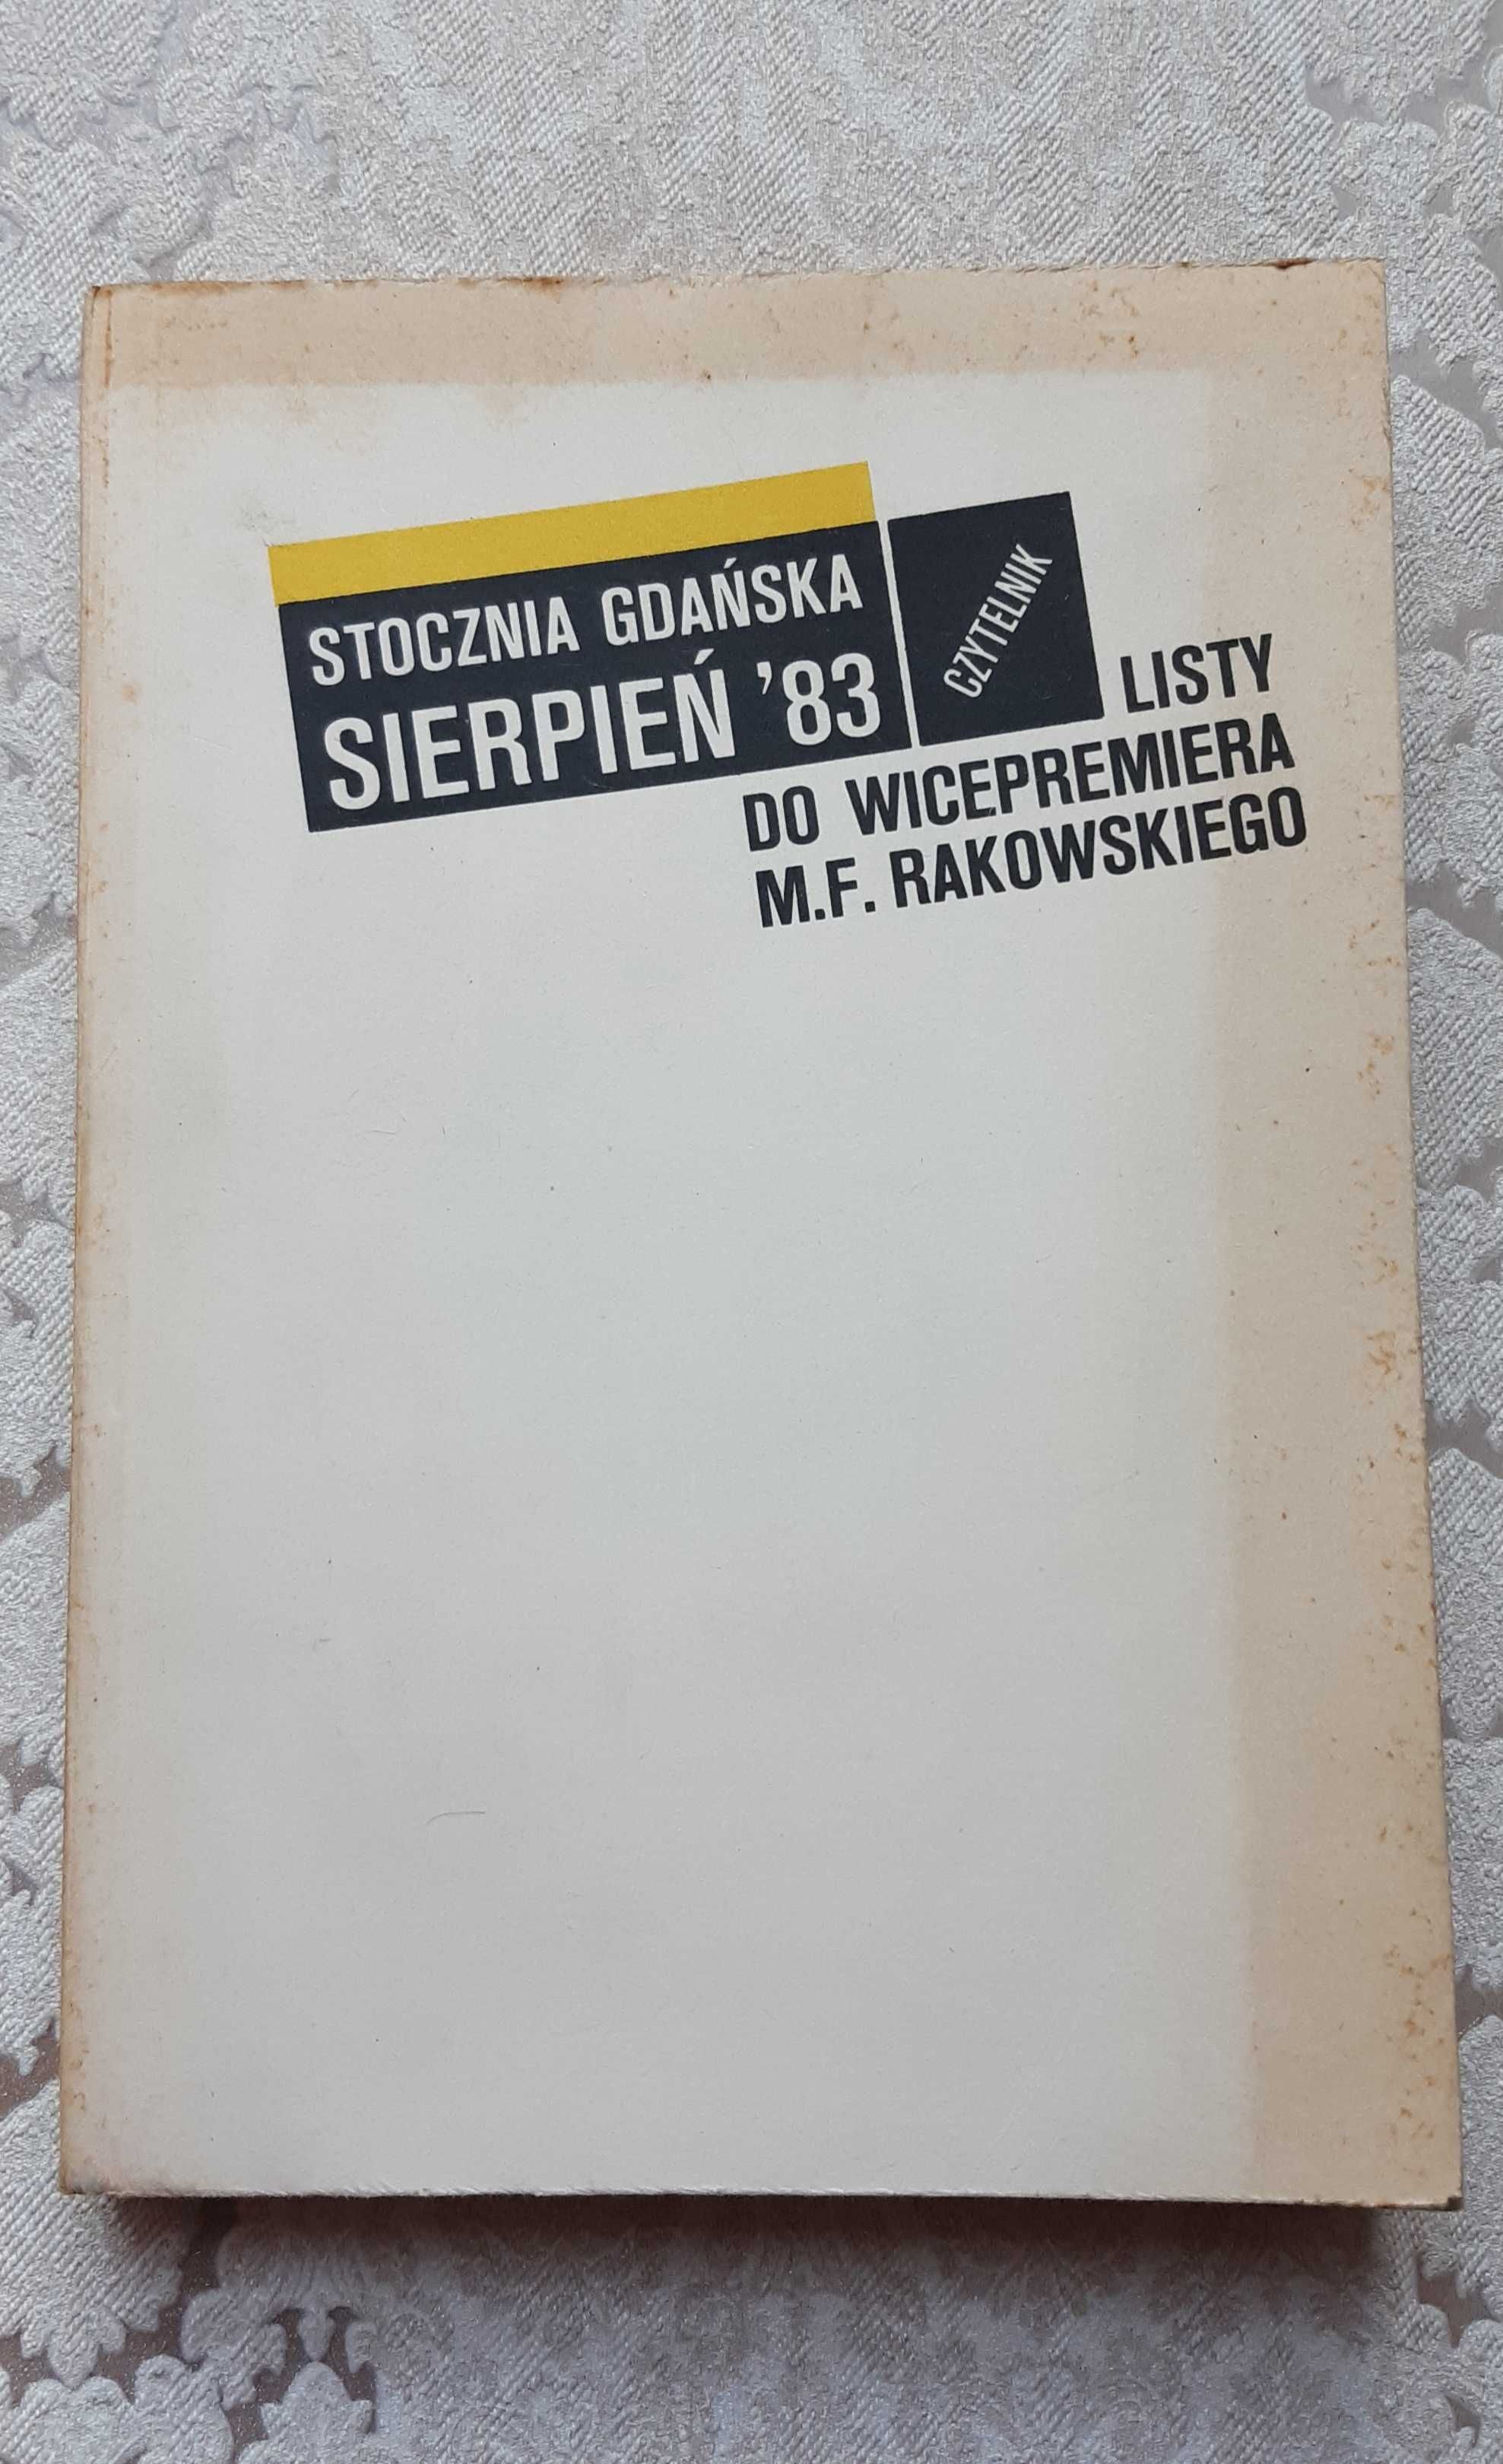 Książka "Stocznia Gdańska sierpień '83"